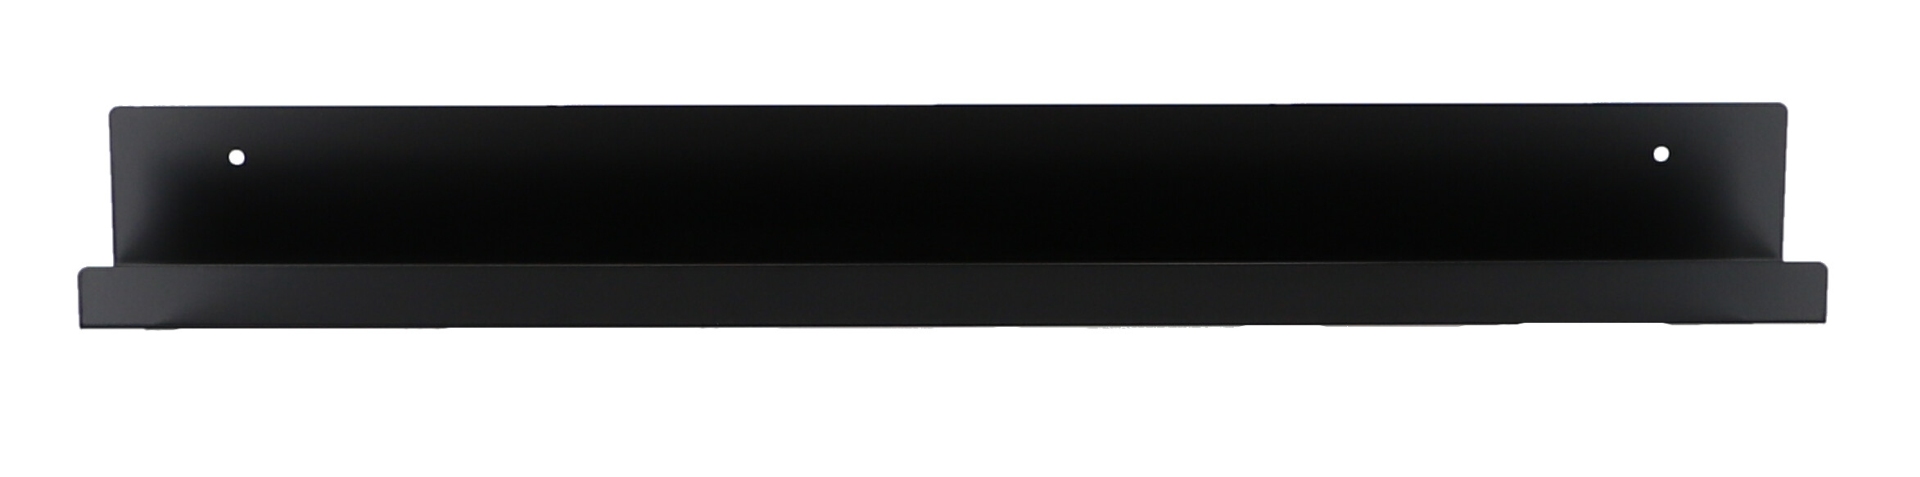 Das Wandregal Jill wurde aus Metall gefertigt und hat einen schwarzen Farbton. Die Breite beträgt 80 cm. Das Design ist schlicht aber auch modern. Das Regal ist ein Produkt der Marke Jan Kurtz.